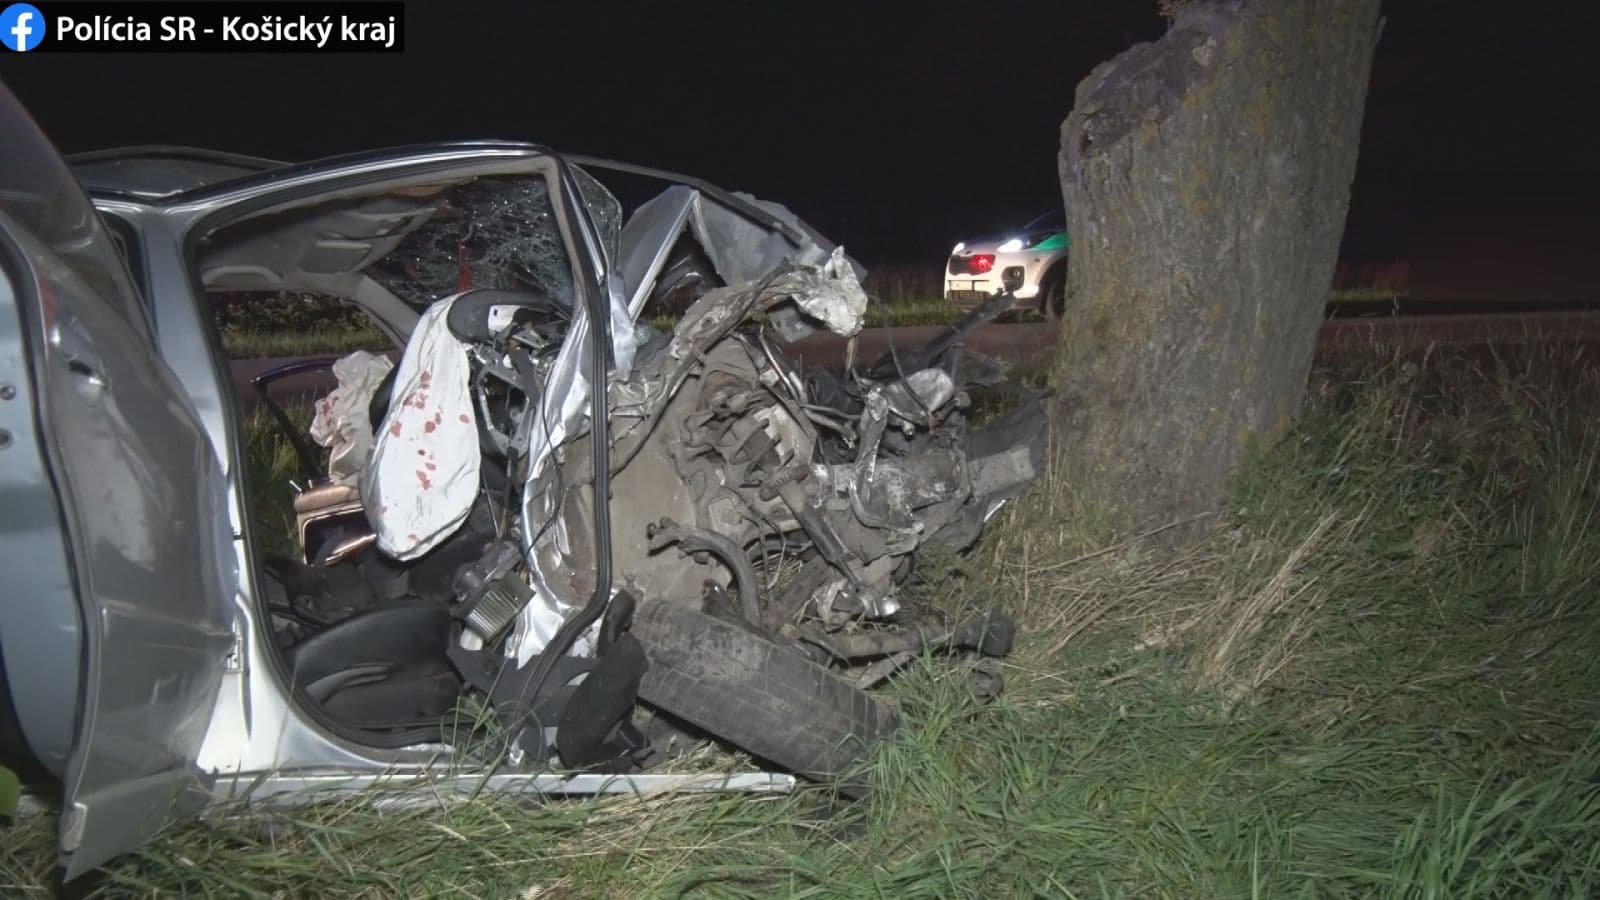 TRAGIKUS BALESET: Szörnyethalt a sofőr a fának csapódott kocsiban